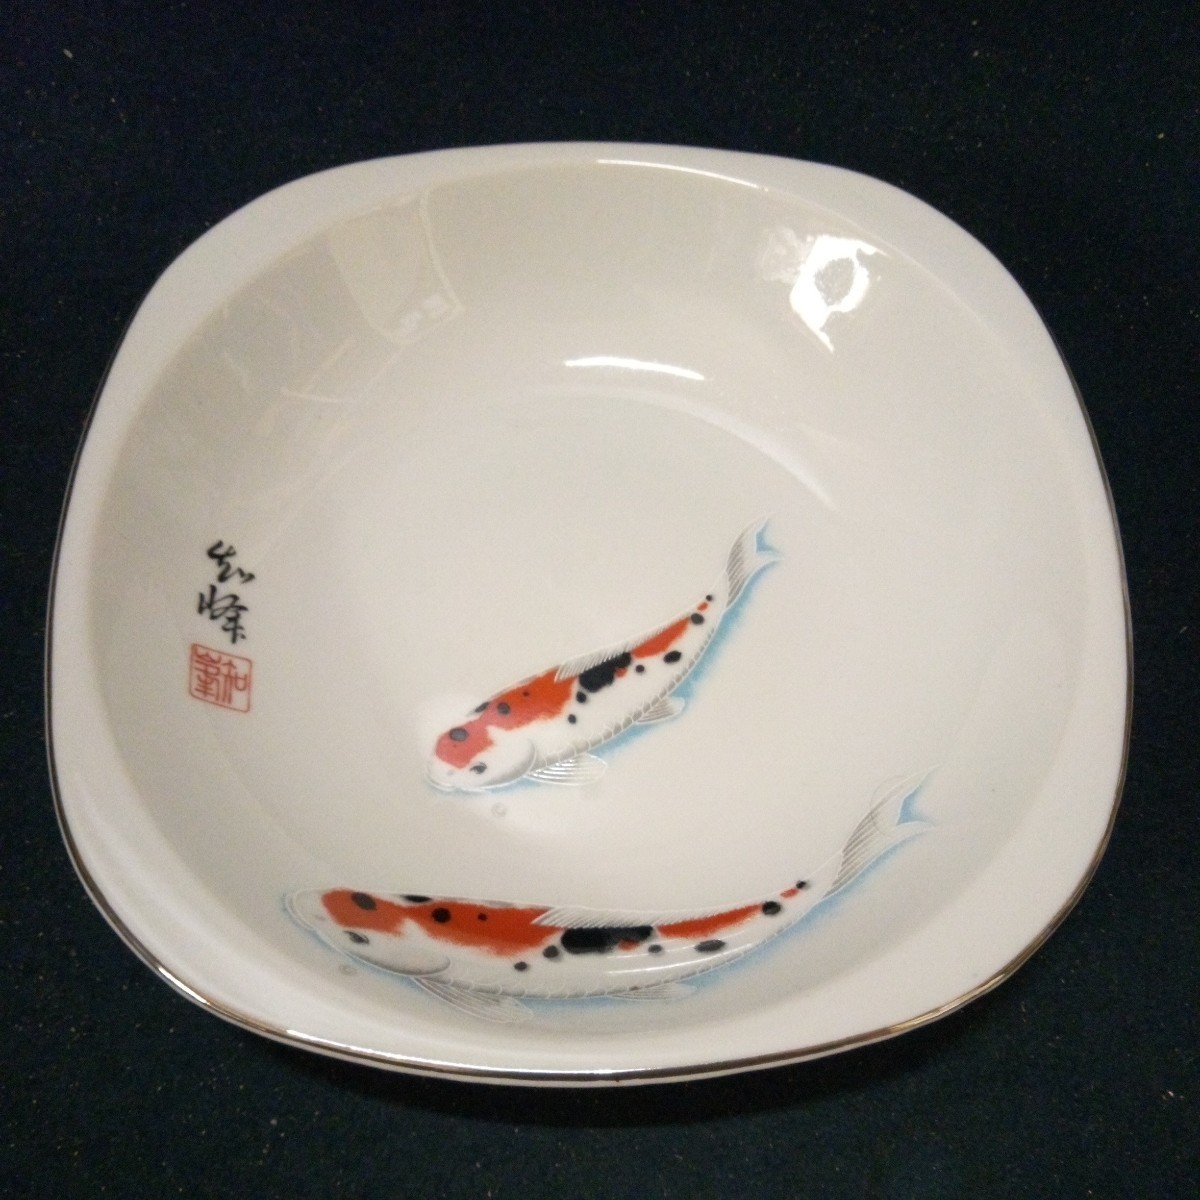 陶器 食器 角皿 盛り皿 和峰作 錦鯉 2枚組 約21×21cm/19×19cm 箱入り アンティークの画像4